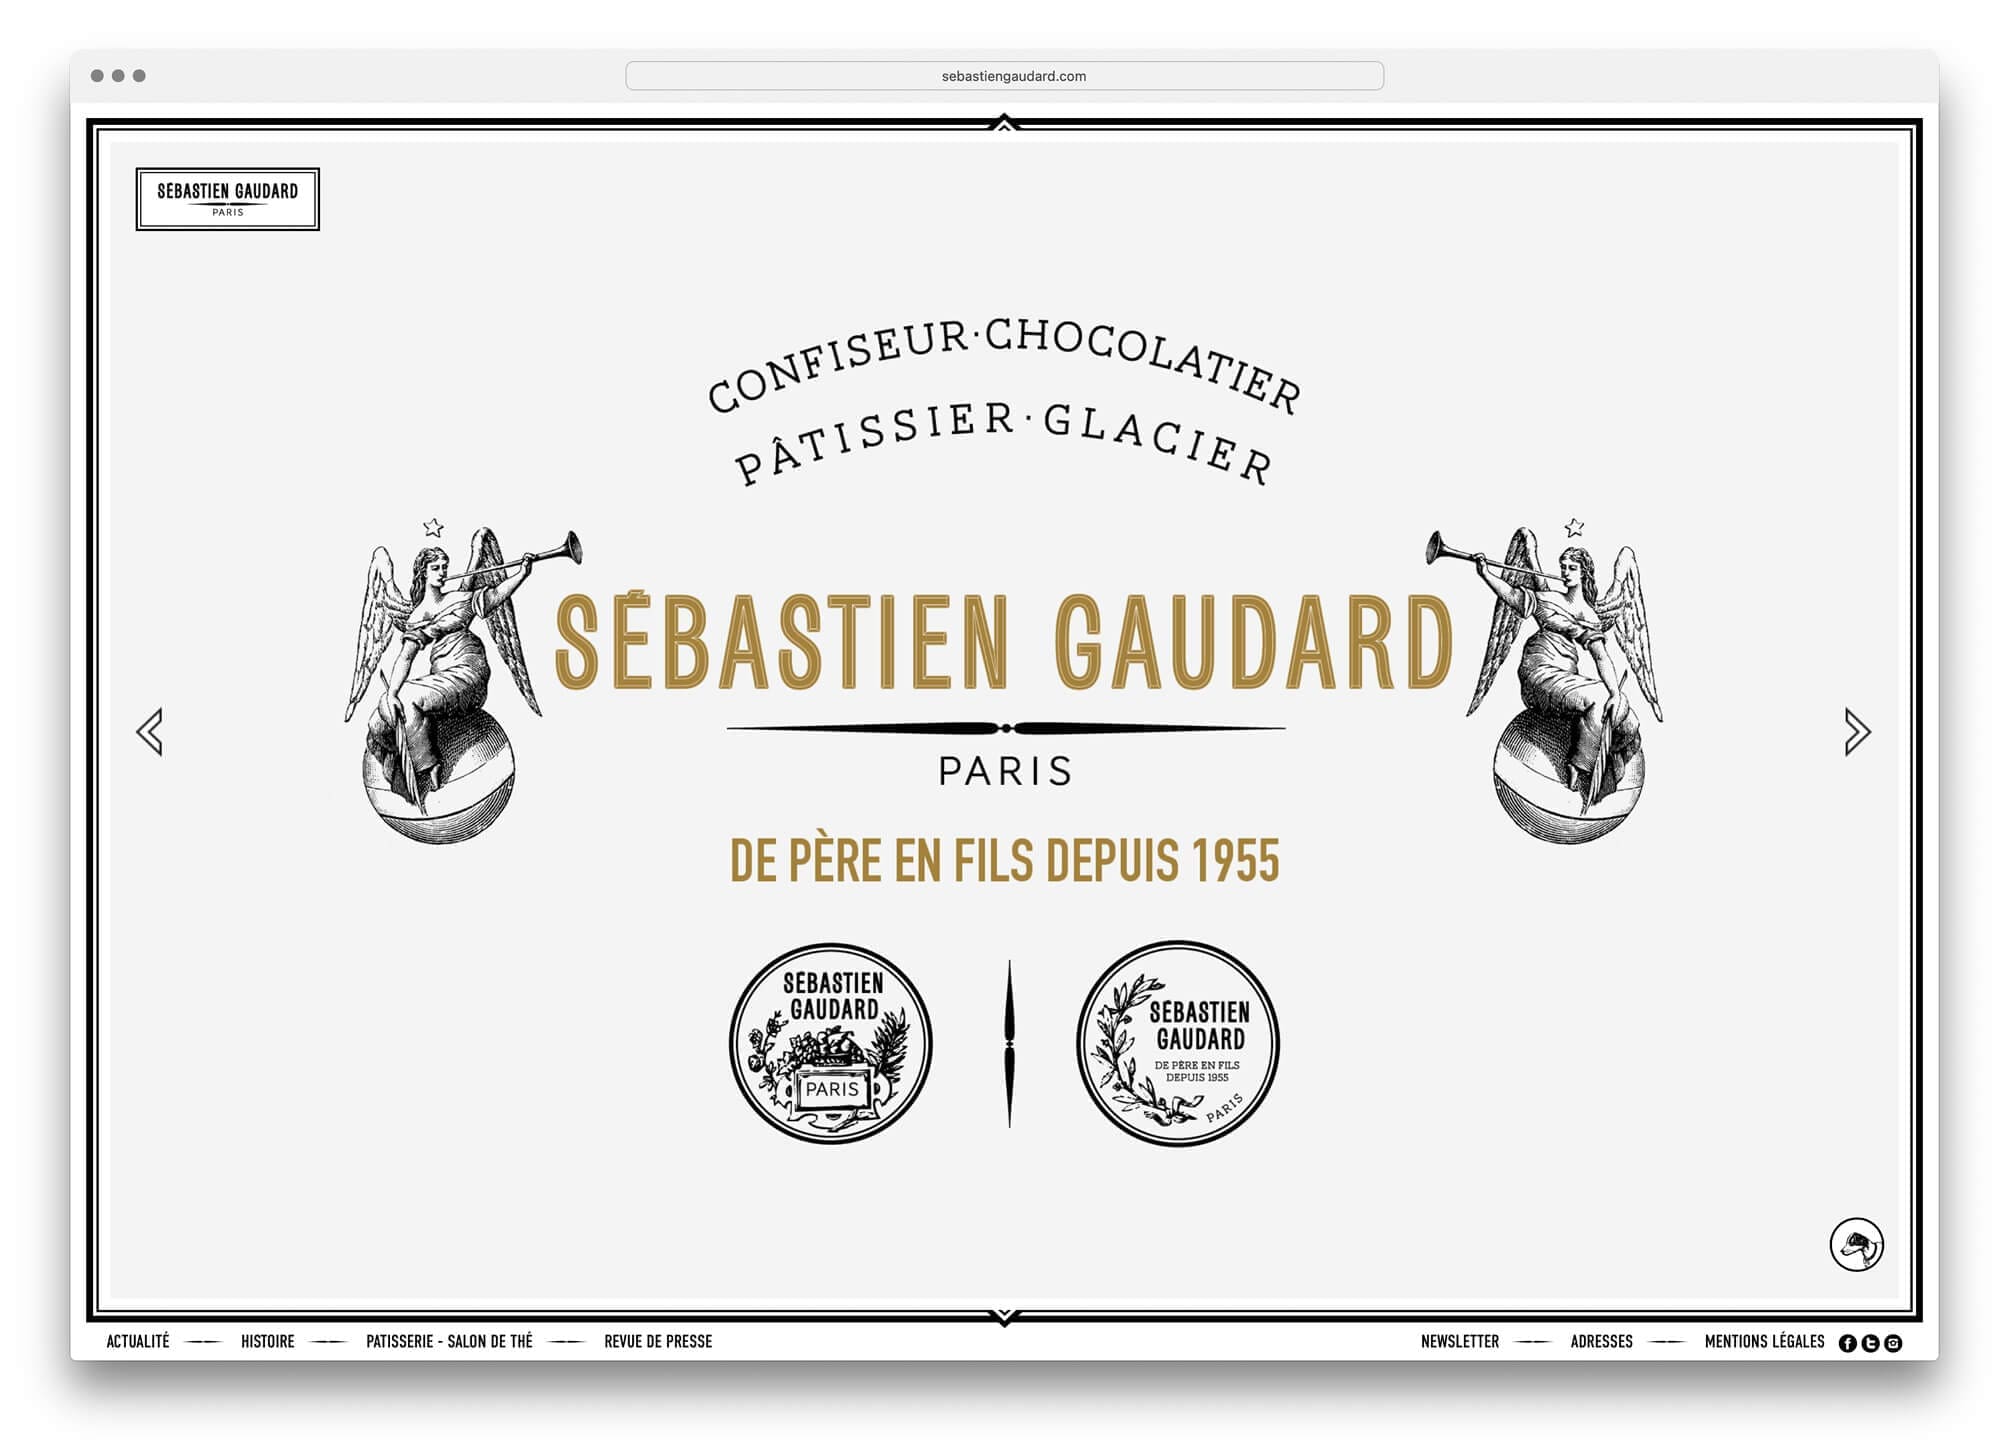 Home du site Sébastien Gaudard, confiseur, chocolatier, pâtissier, glacier, graphisme 18e, ornement, médailles et anges, design Ich&Kar